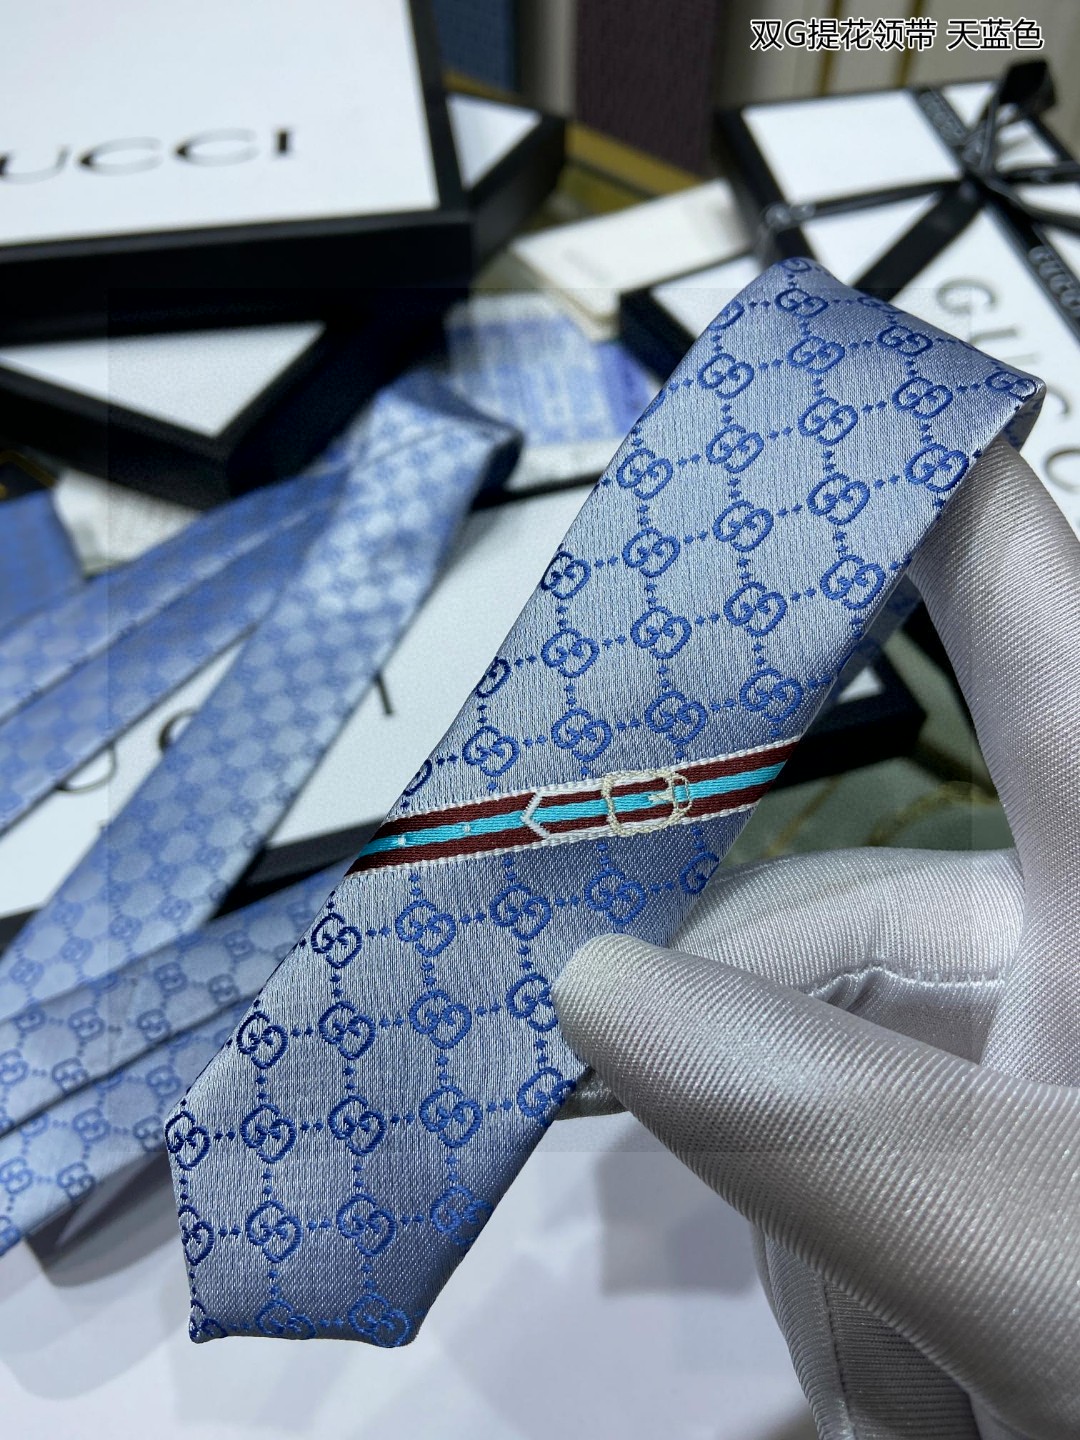 特价G家男士领带系列双G提花领带稀有采用经典小GLOGO提花展现精湛手工与时尚优雅的理想选择这款领带将标